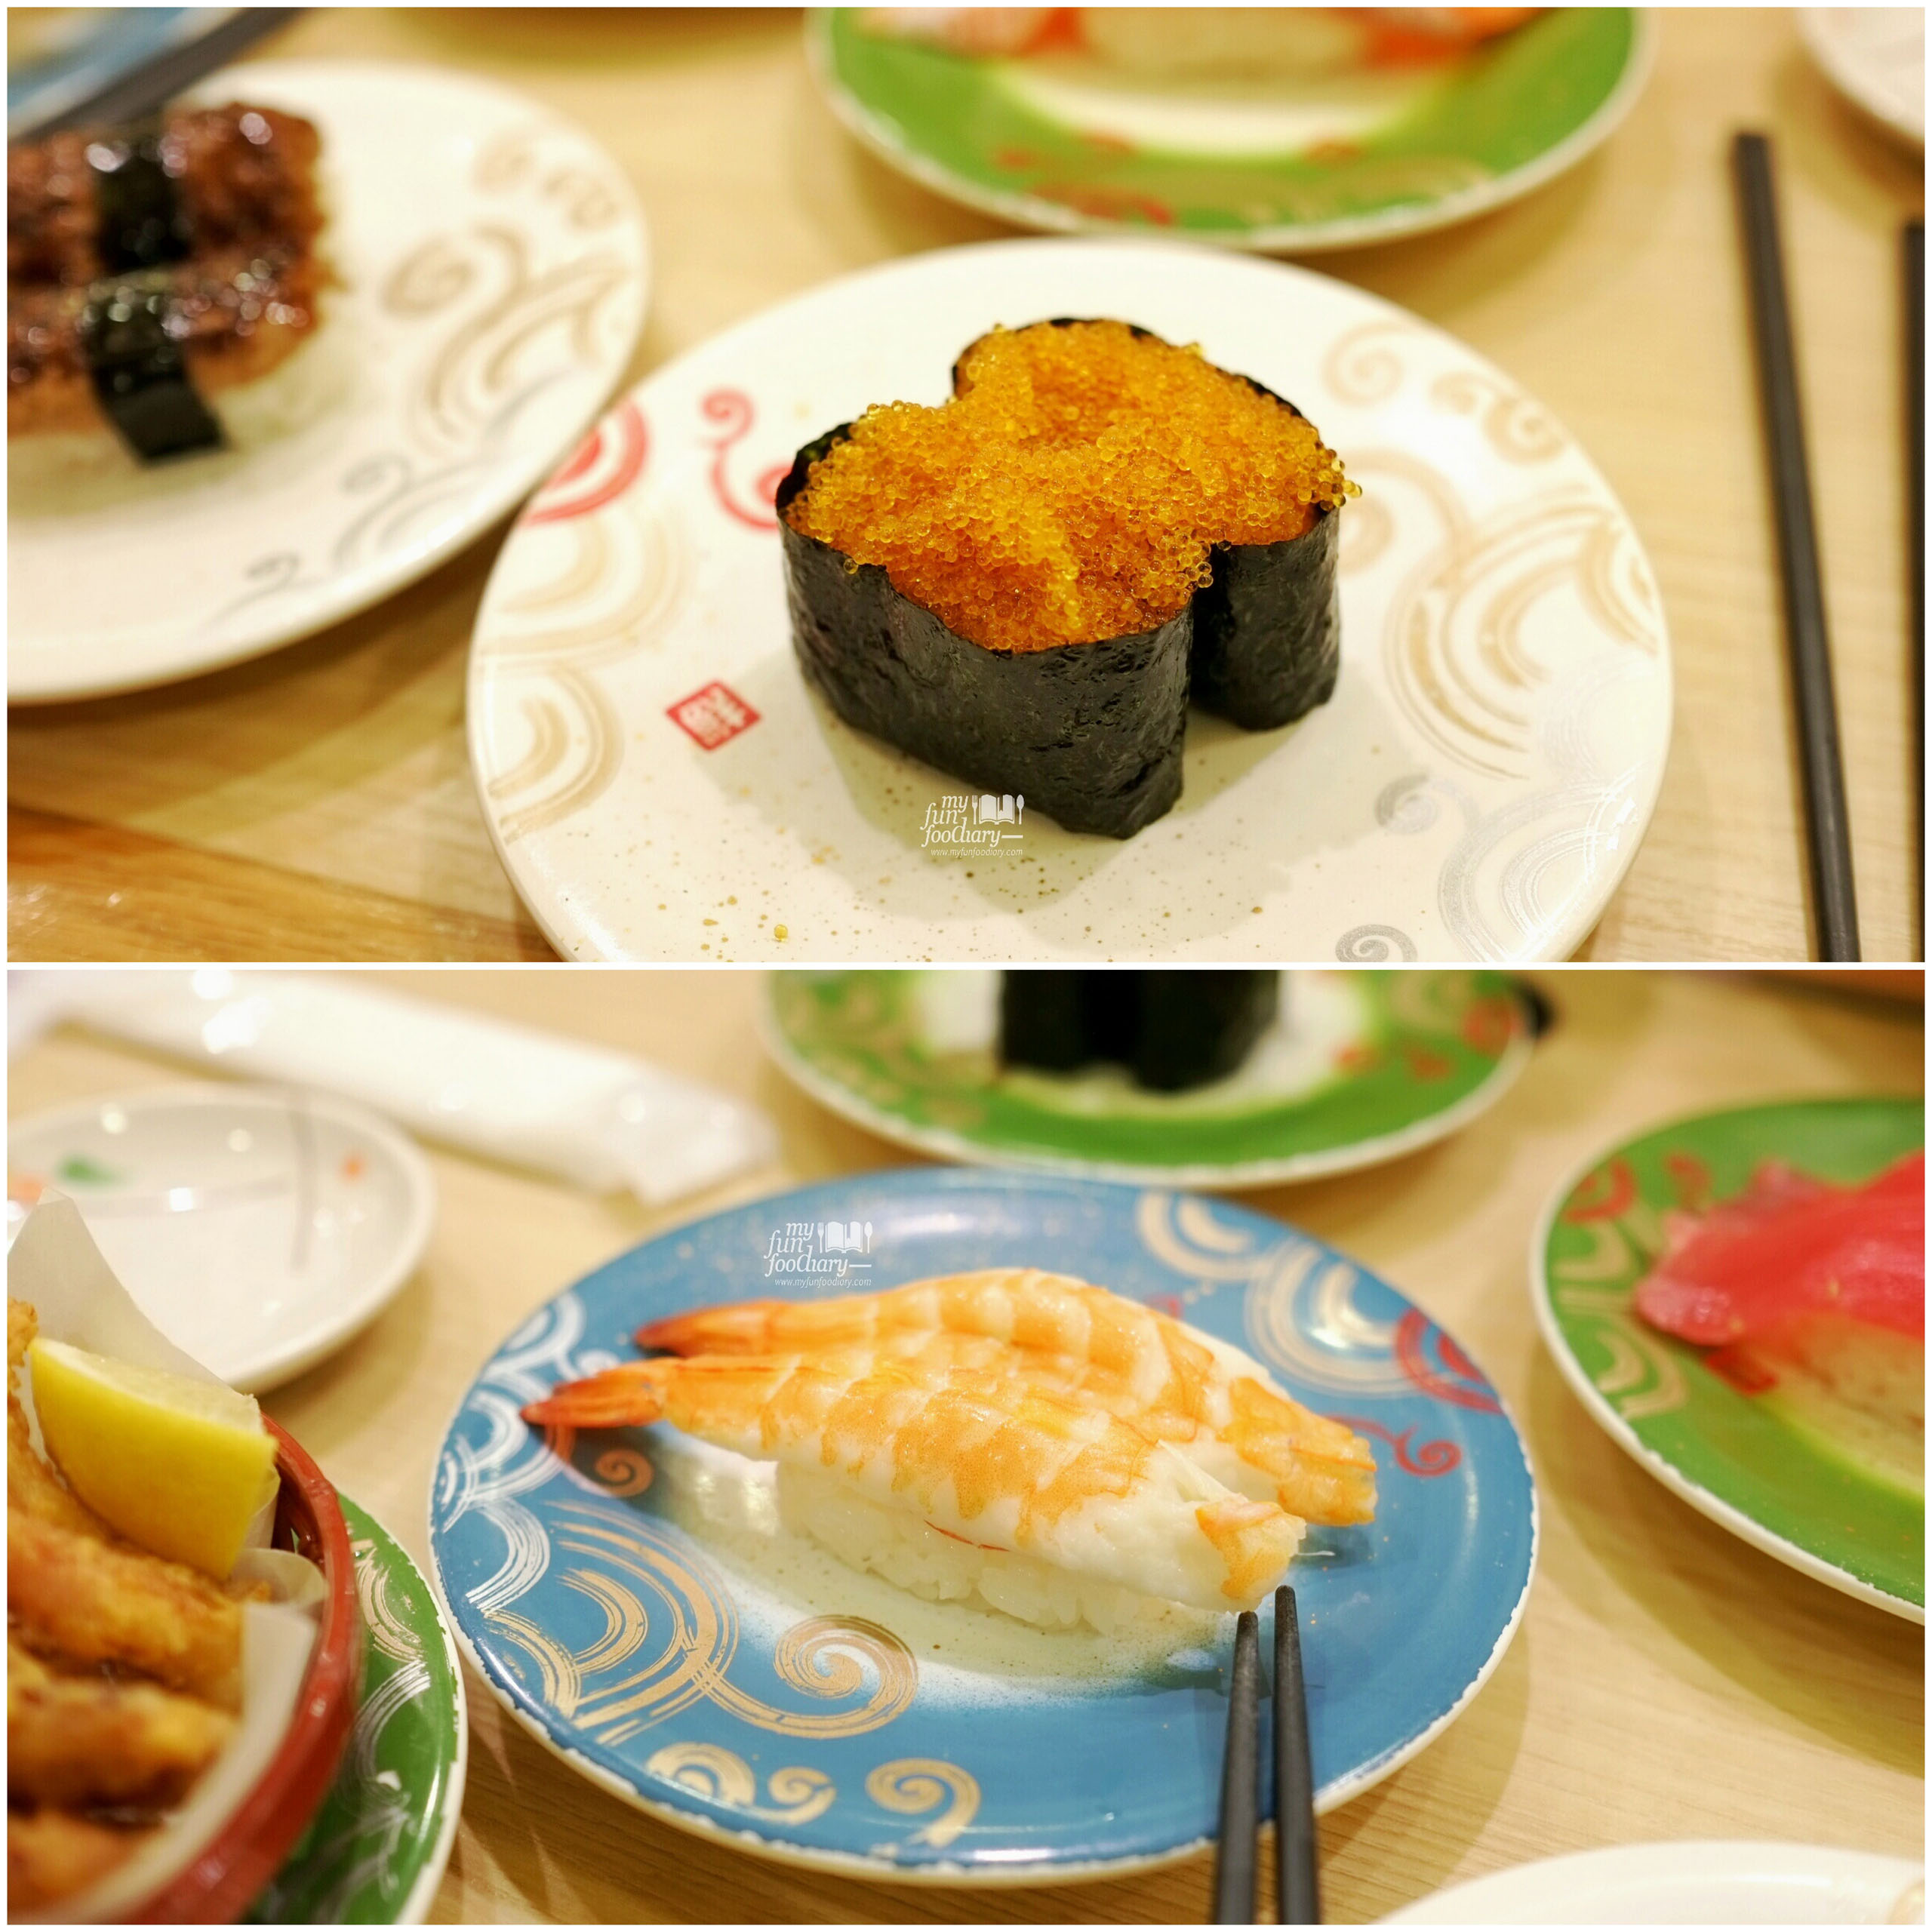 Tobiko Sushi and Shrimp Sushi at Toriton Sushi by Myfunfoodiary